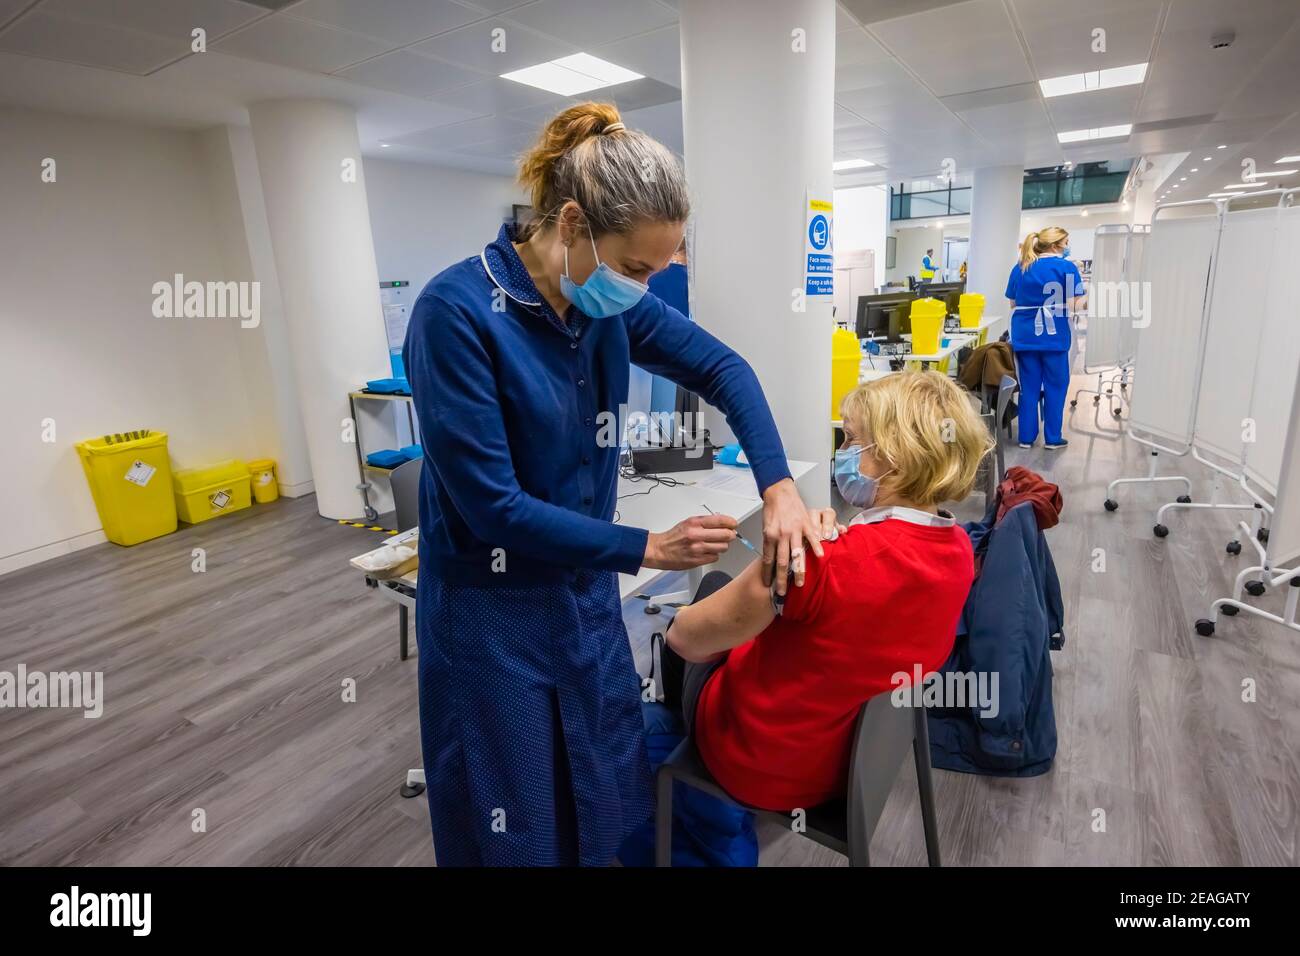 Una donna locale riceve l'iniezione di vaccinazione COVID-19 Pfizer da un'infermiera nel sito di vaccinazione Covid-19 a Woking, Surrey, nel sud-est dell'Inghilterra Foto Stock